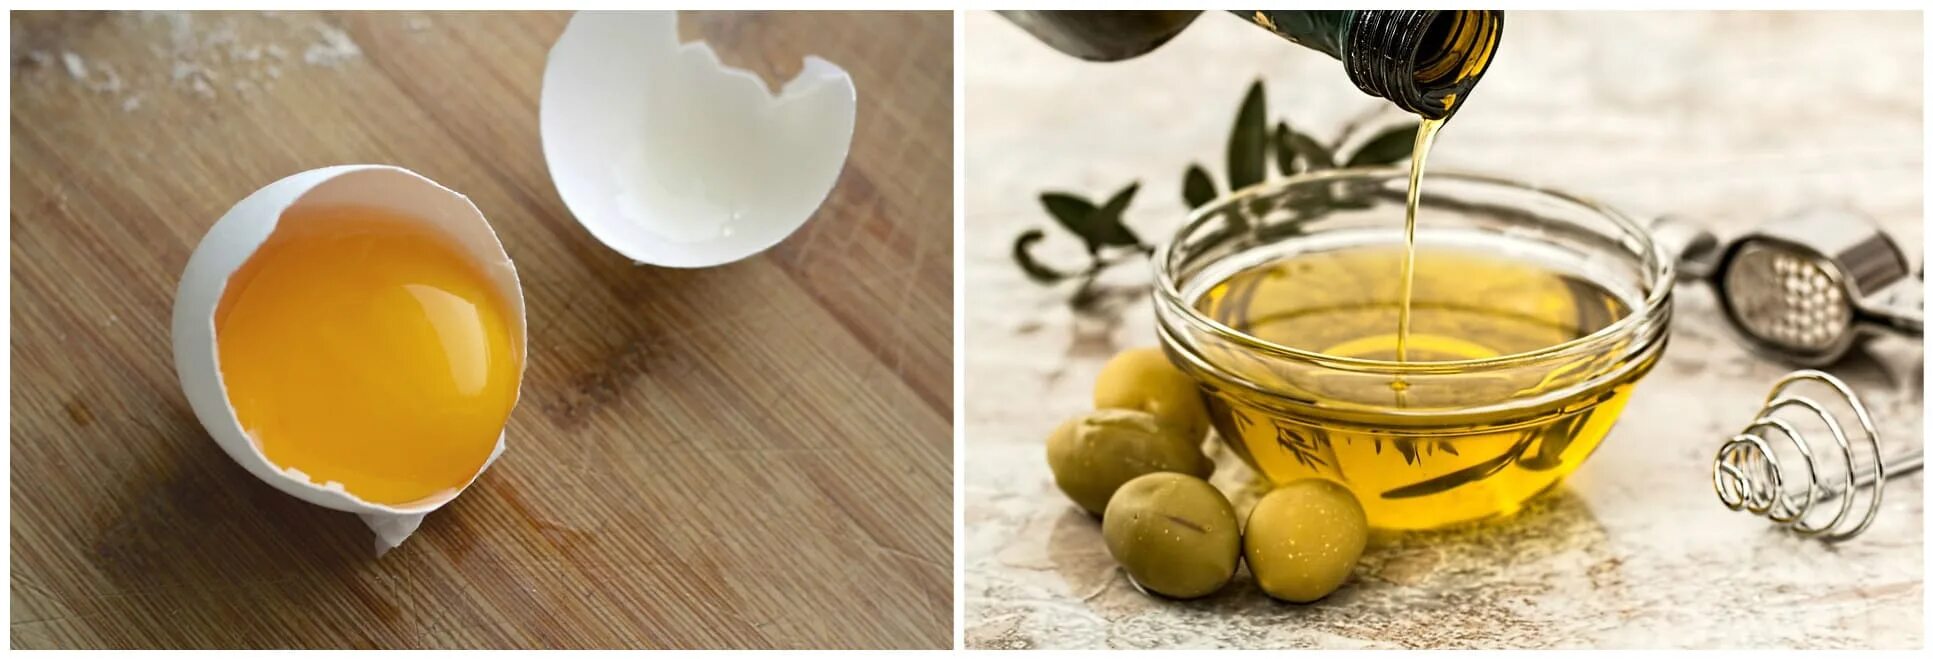 Маска для волос из яйца и меда. Оливковое масло и яичный желток. Оливковое масло и мед. Маска из яиц и оливкового масла. Маски для волос мед яйцо масло